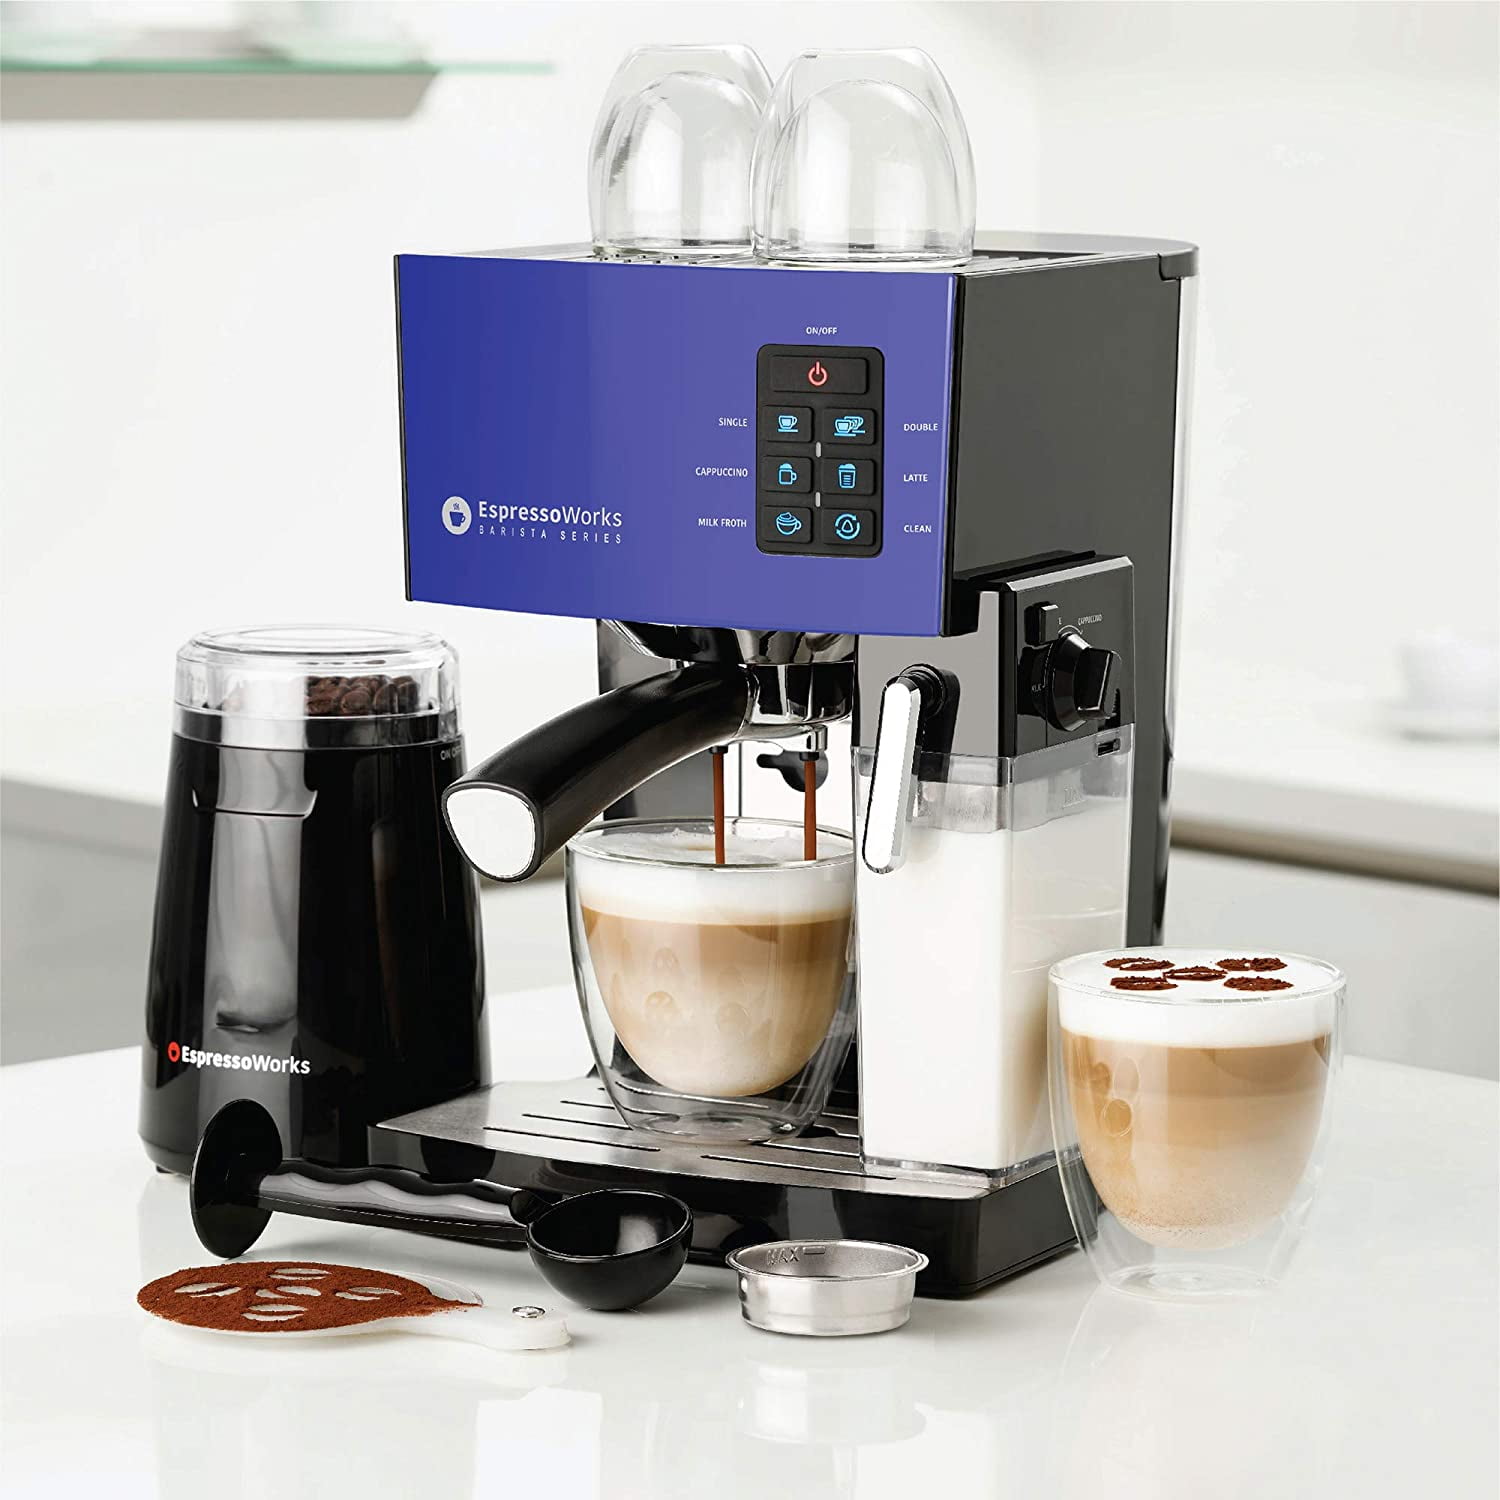 Brown Espresso Machine Coffee Maker 19 Bar Cappuccino Machines with Automatic Espresso Button Setting for Espresso,Cappuccino,Latte,Mocha